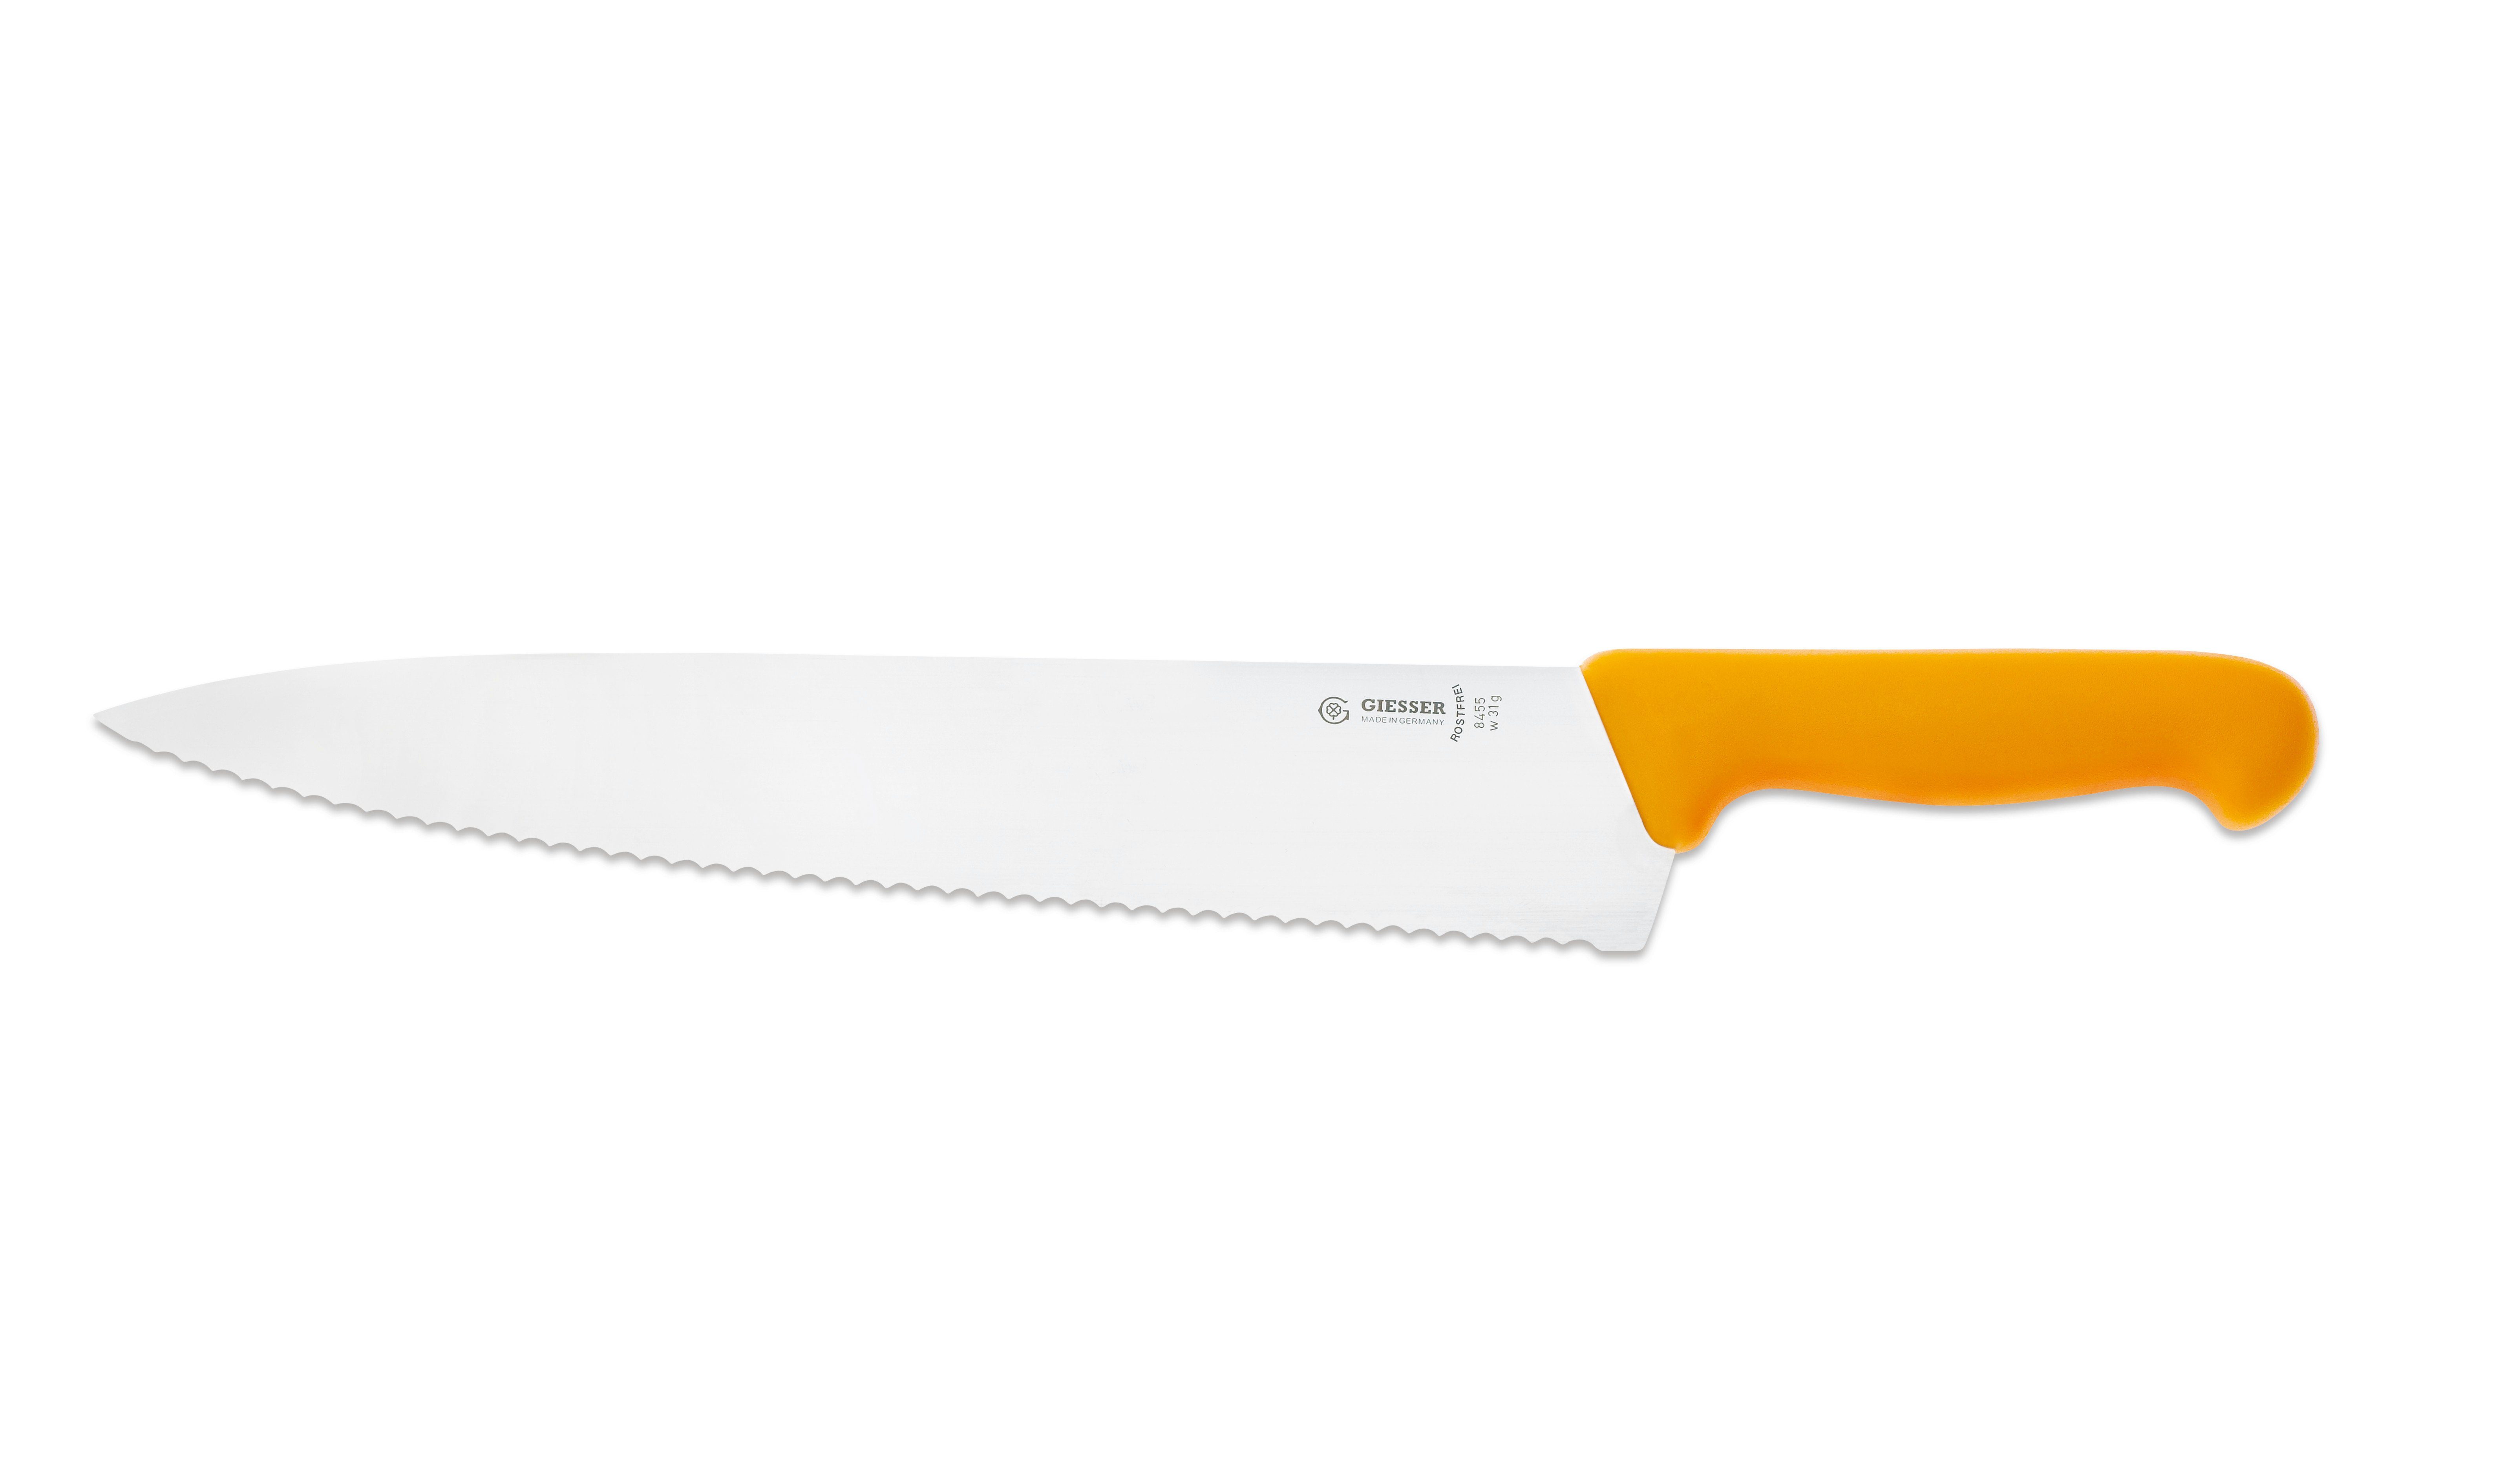 für Form, scharf, breit gelb-Welle Kochmesser Ideal Küche Rostfrei, breite Handabzug, Küchenmesser Giesser 8455, jede Messer